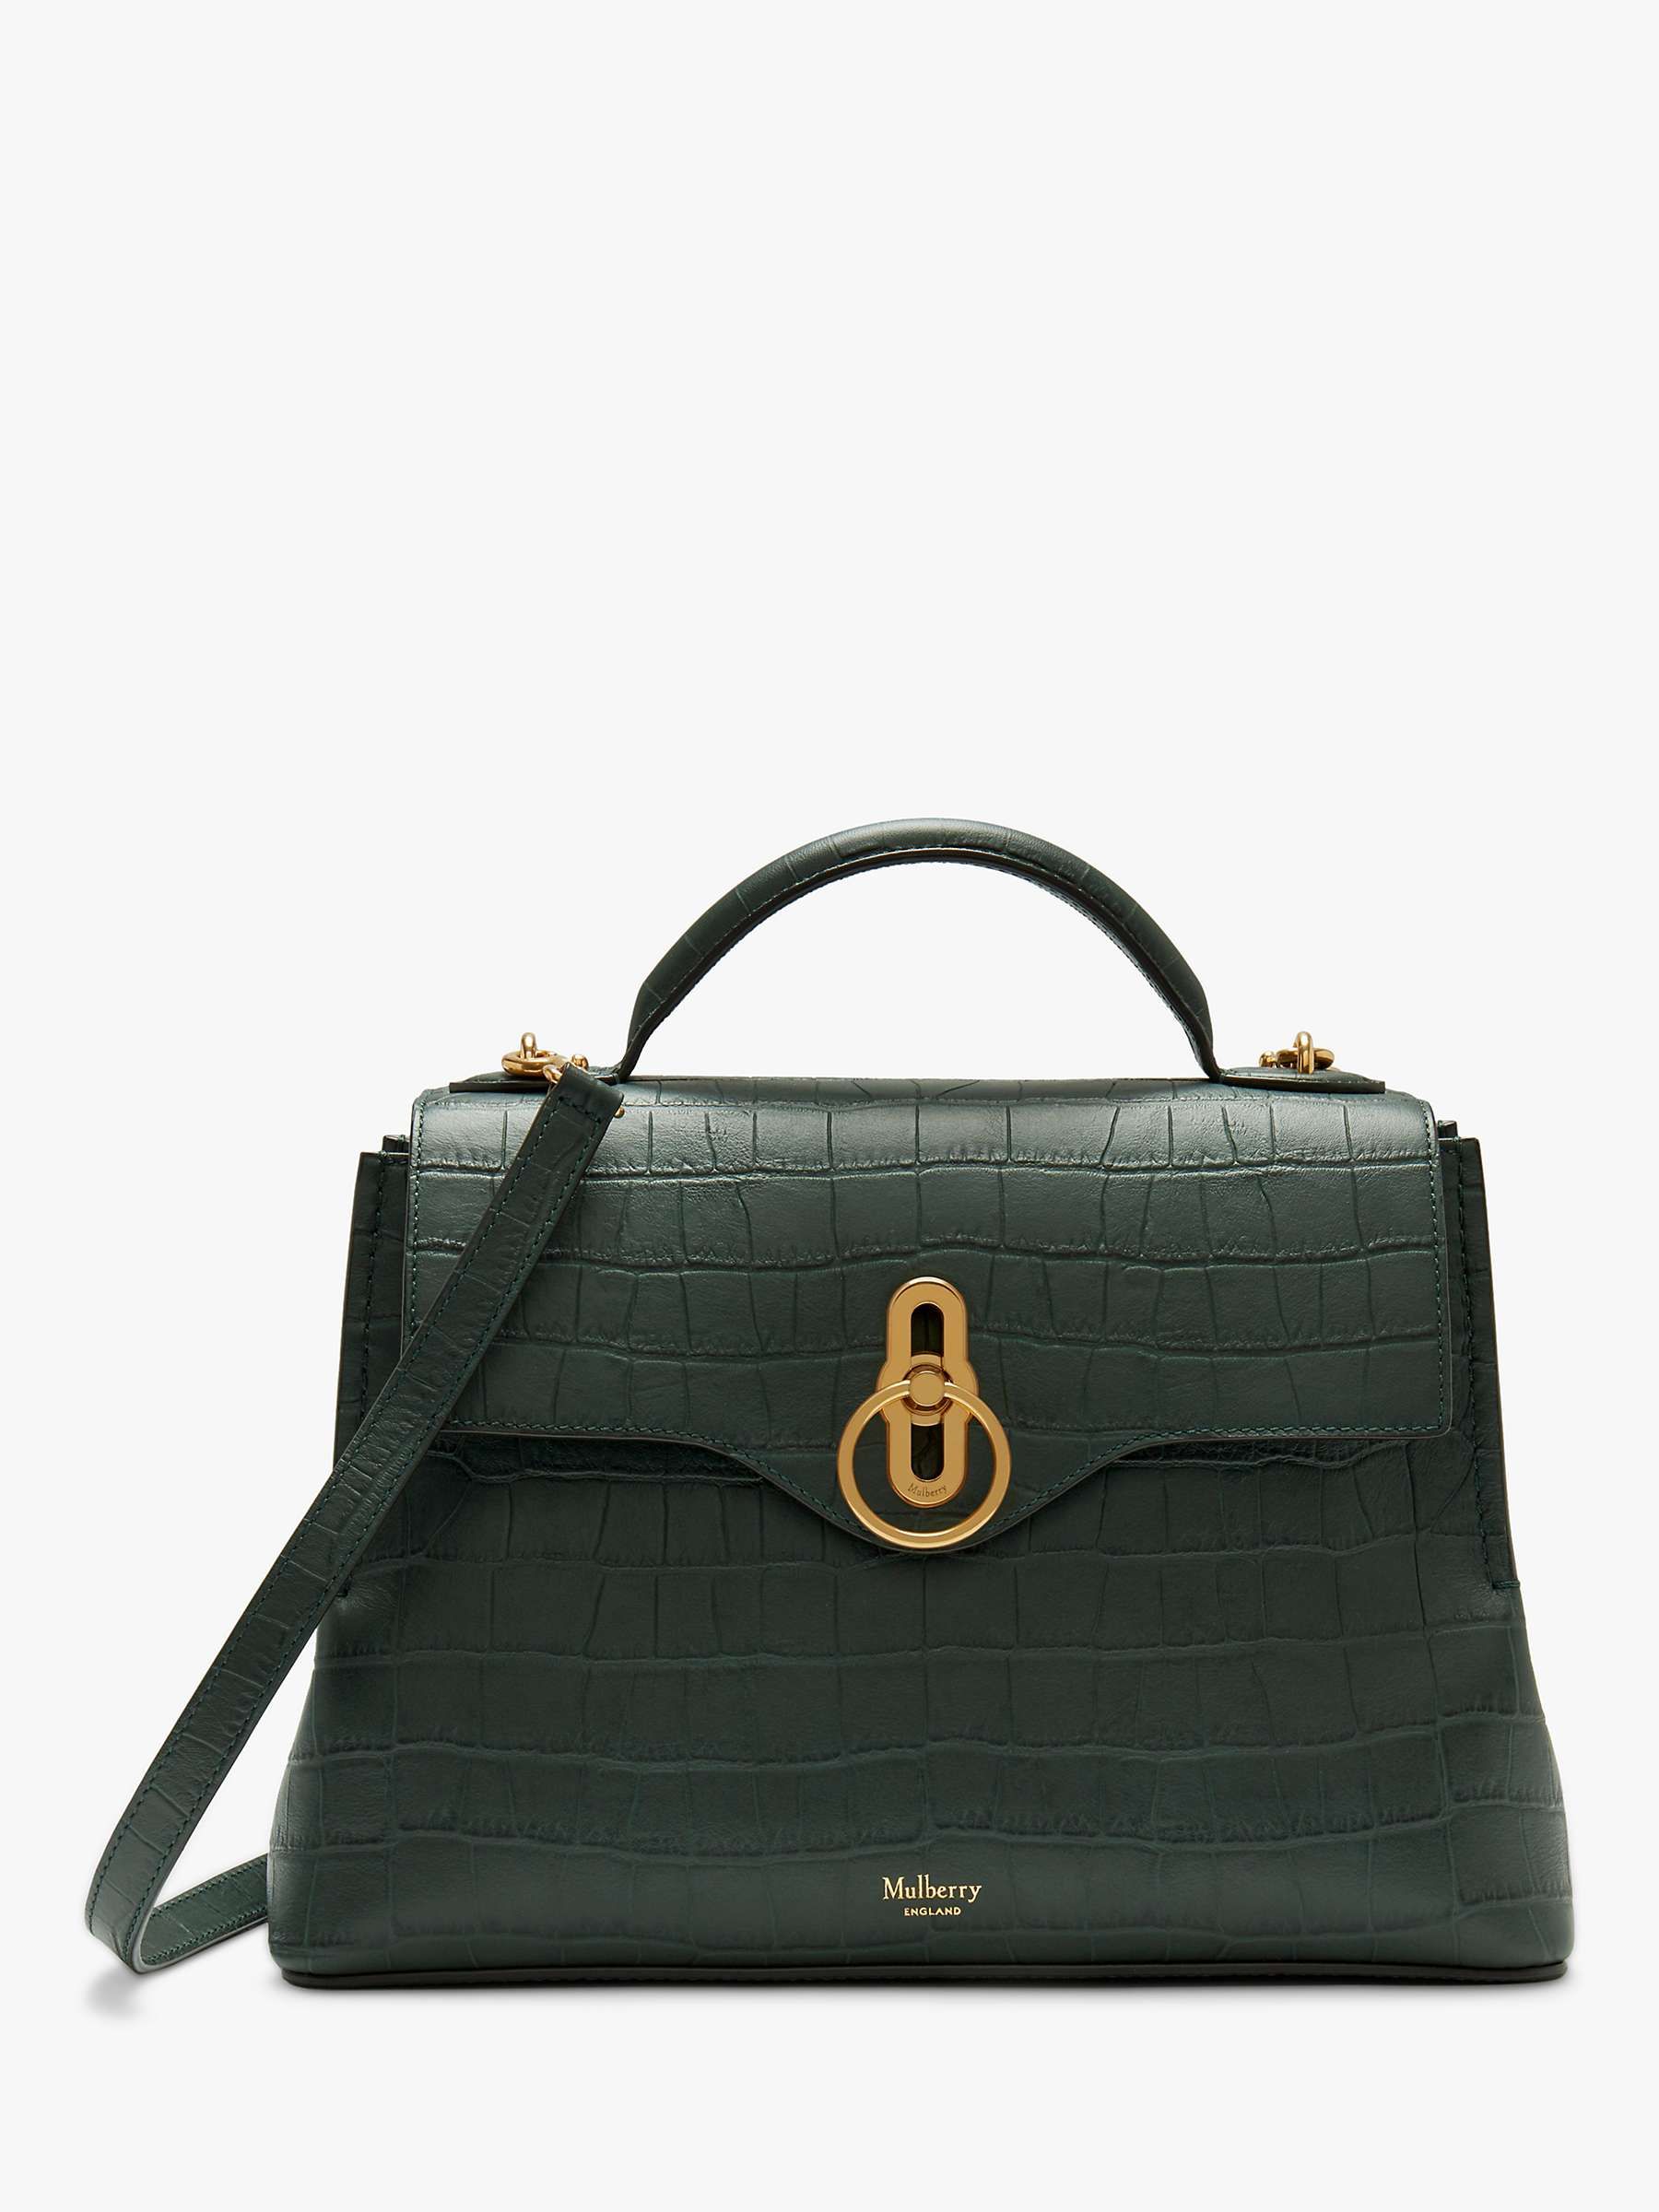 gucci black handbags sale